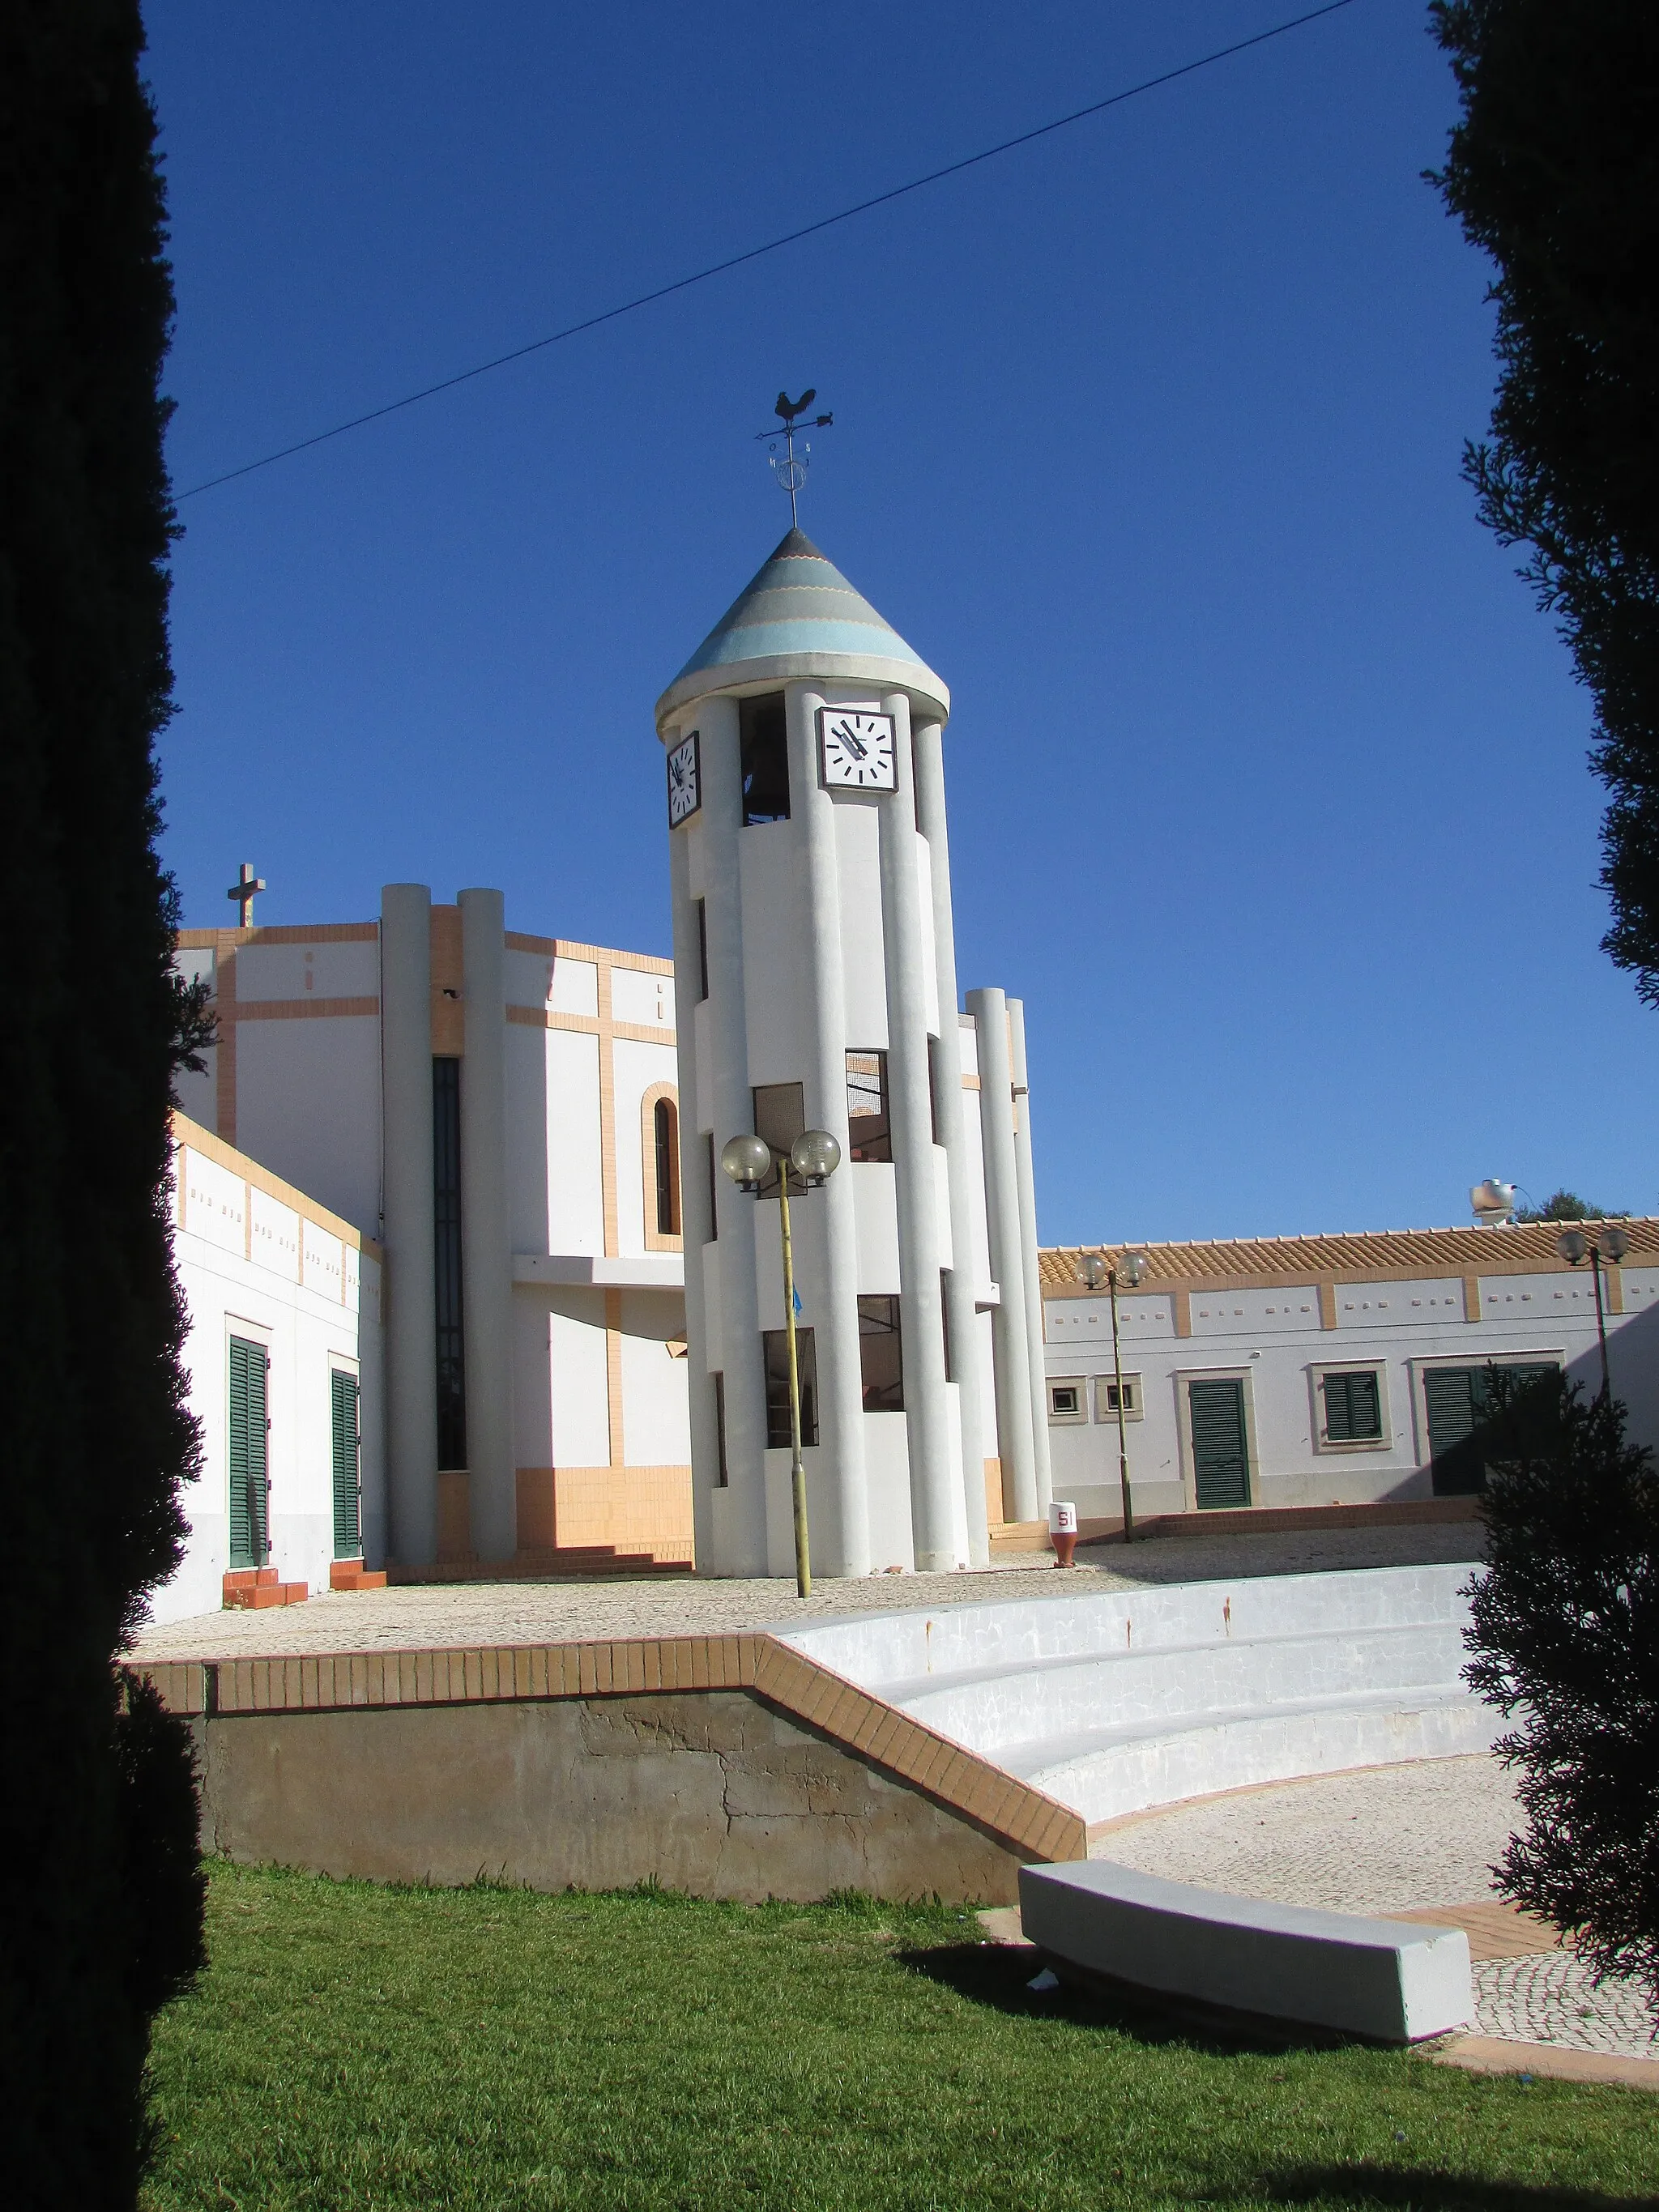 Photo showing: The bell tower of the Parish Church of São José de Ferreiras (Igreja Paroquial de São José de Ferreiras) in the village of Ferreiras Albufeira, Algarve, Portugal.